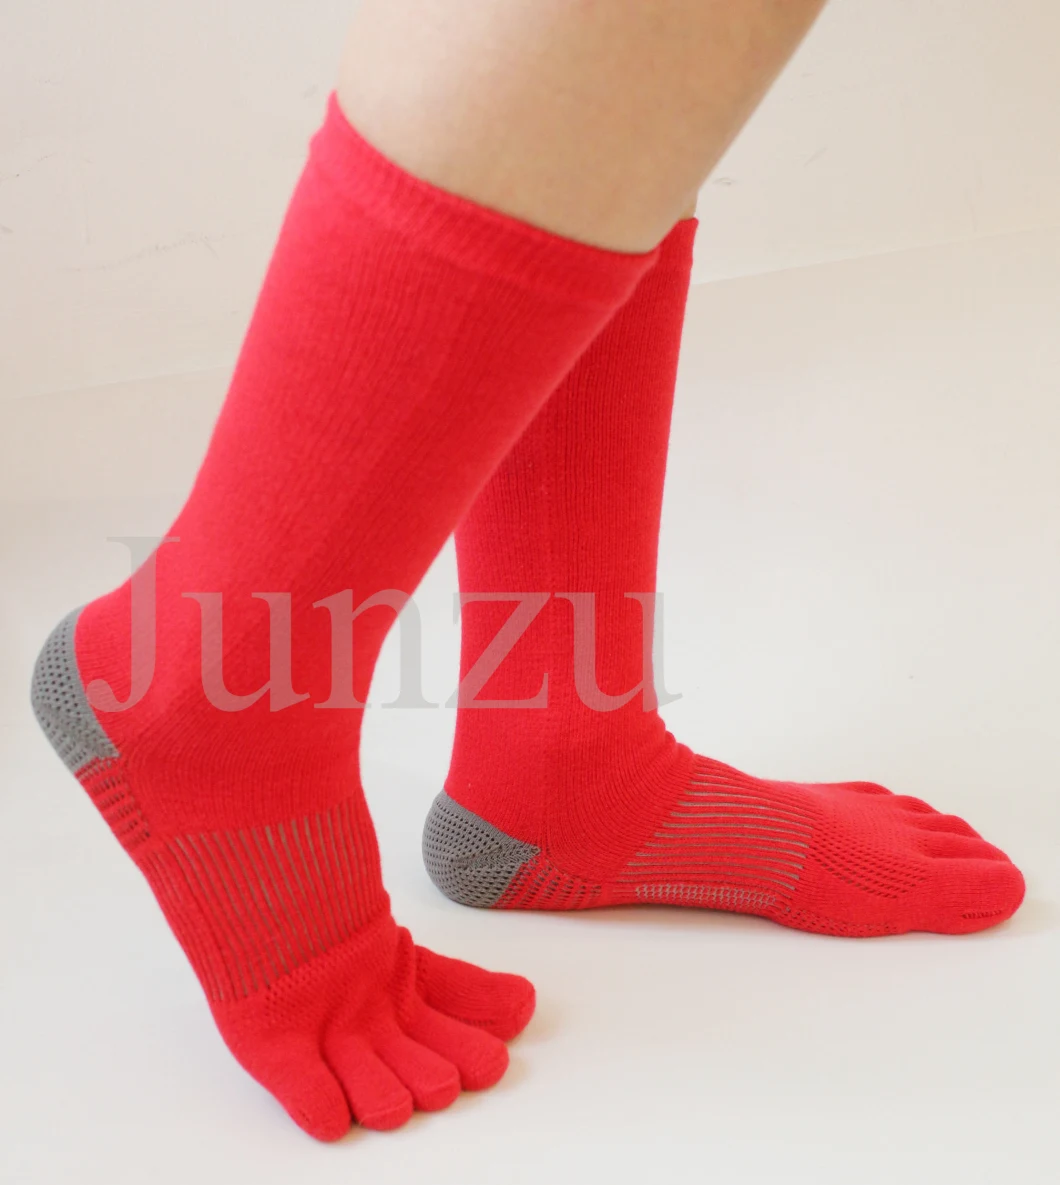 Five Fingers Socks Toe Sock Cotton Polyester Nylon Polyethylene Fiber